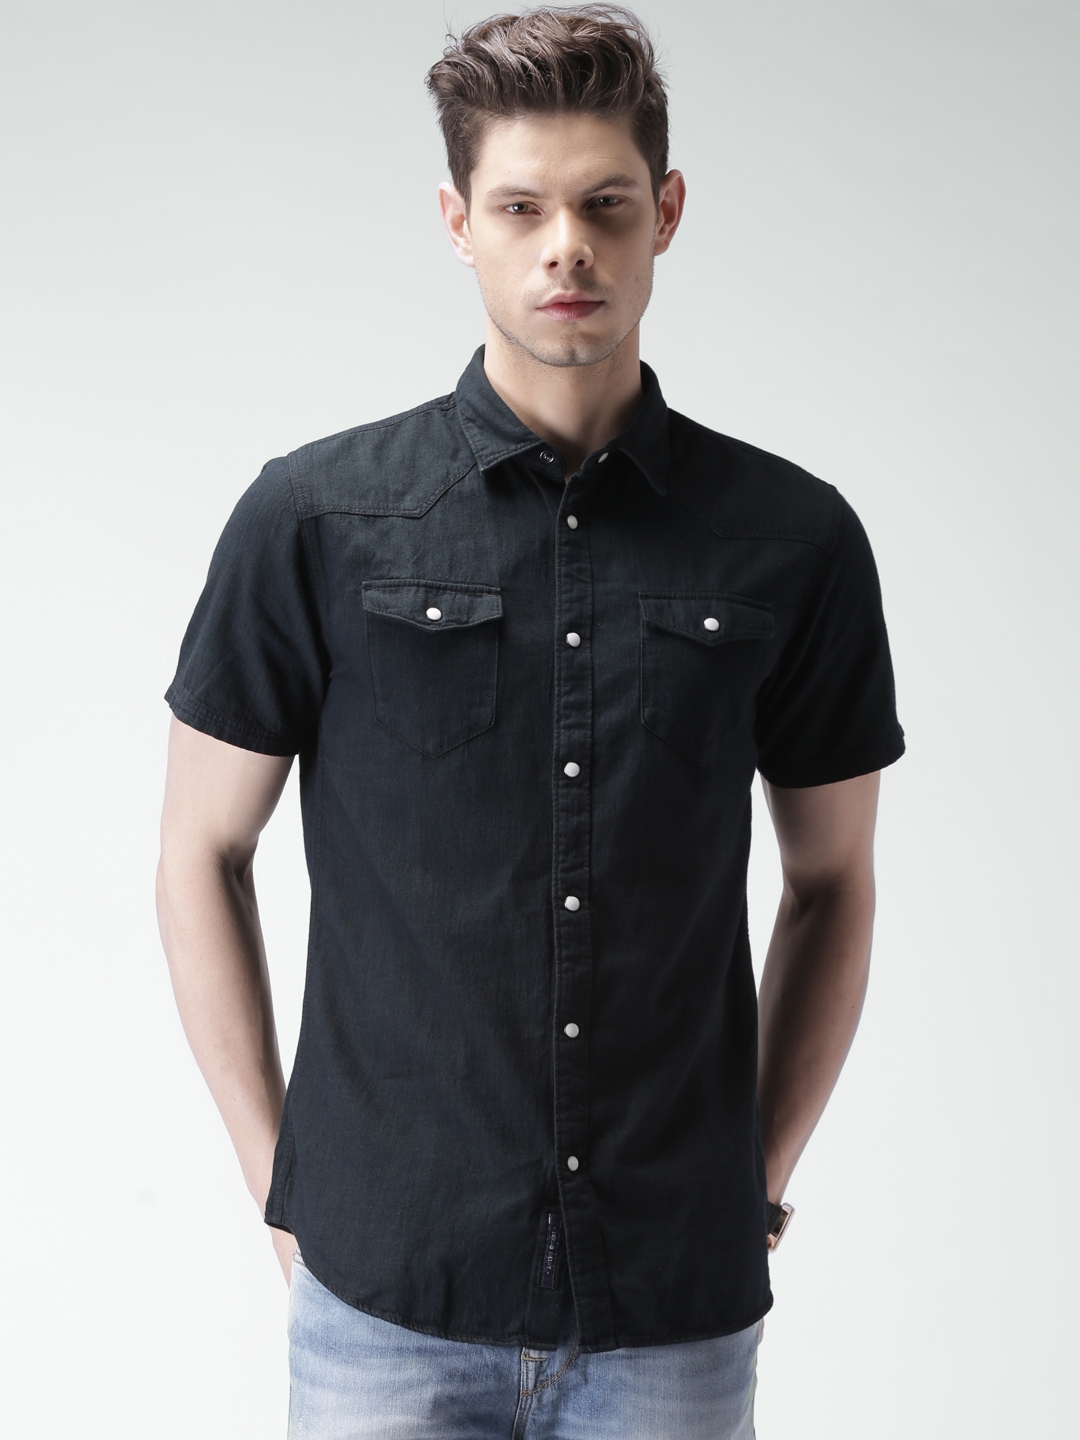 Buy SELECTED Black Denim Slim Fit Casual Shirt - Shirts for Men 1428786 ...